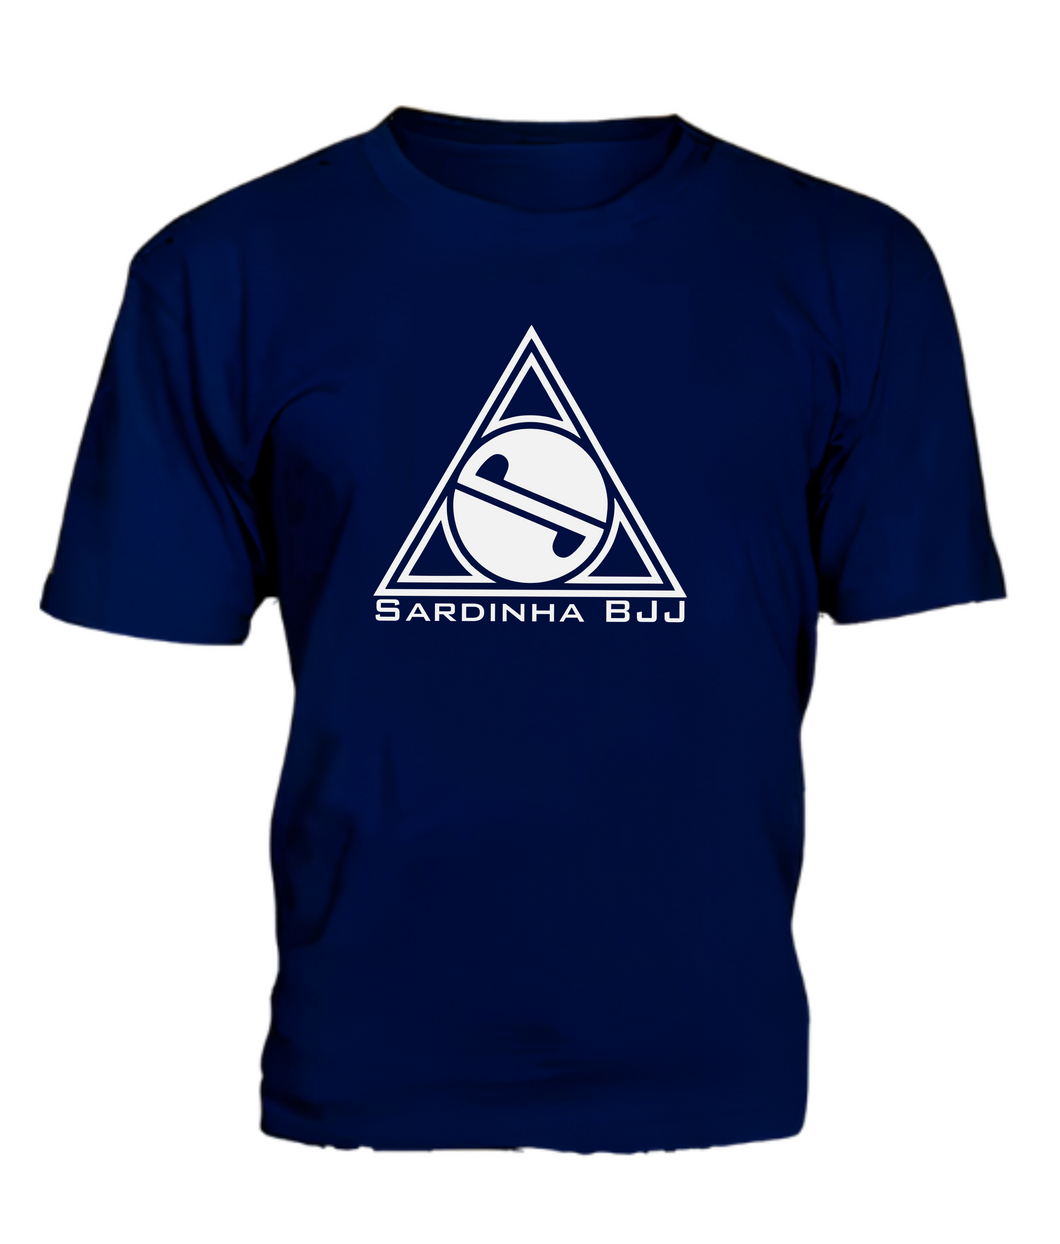 Kids Team T-Shirt - Blue